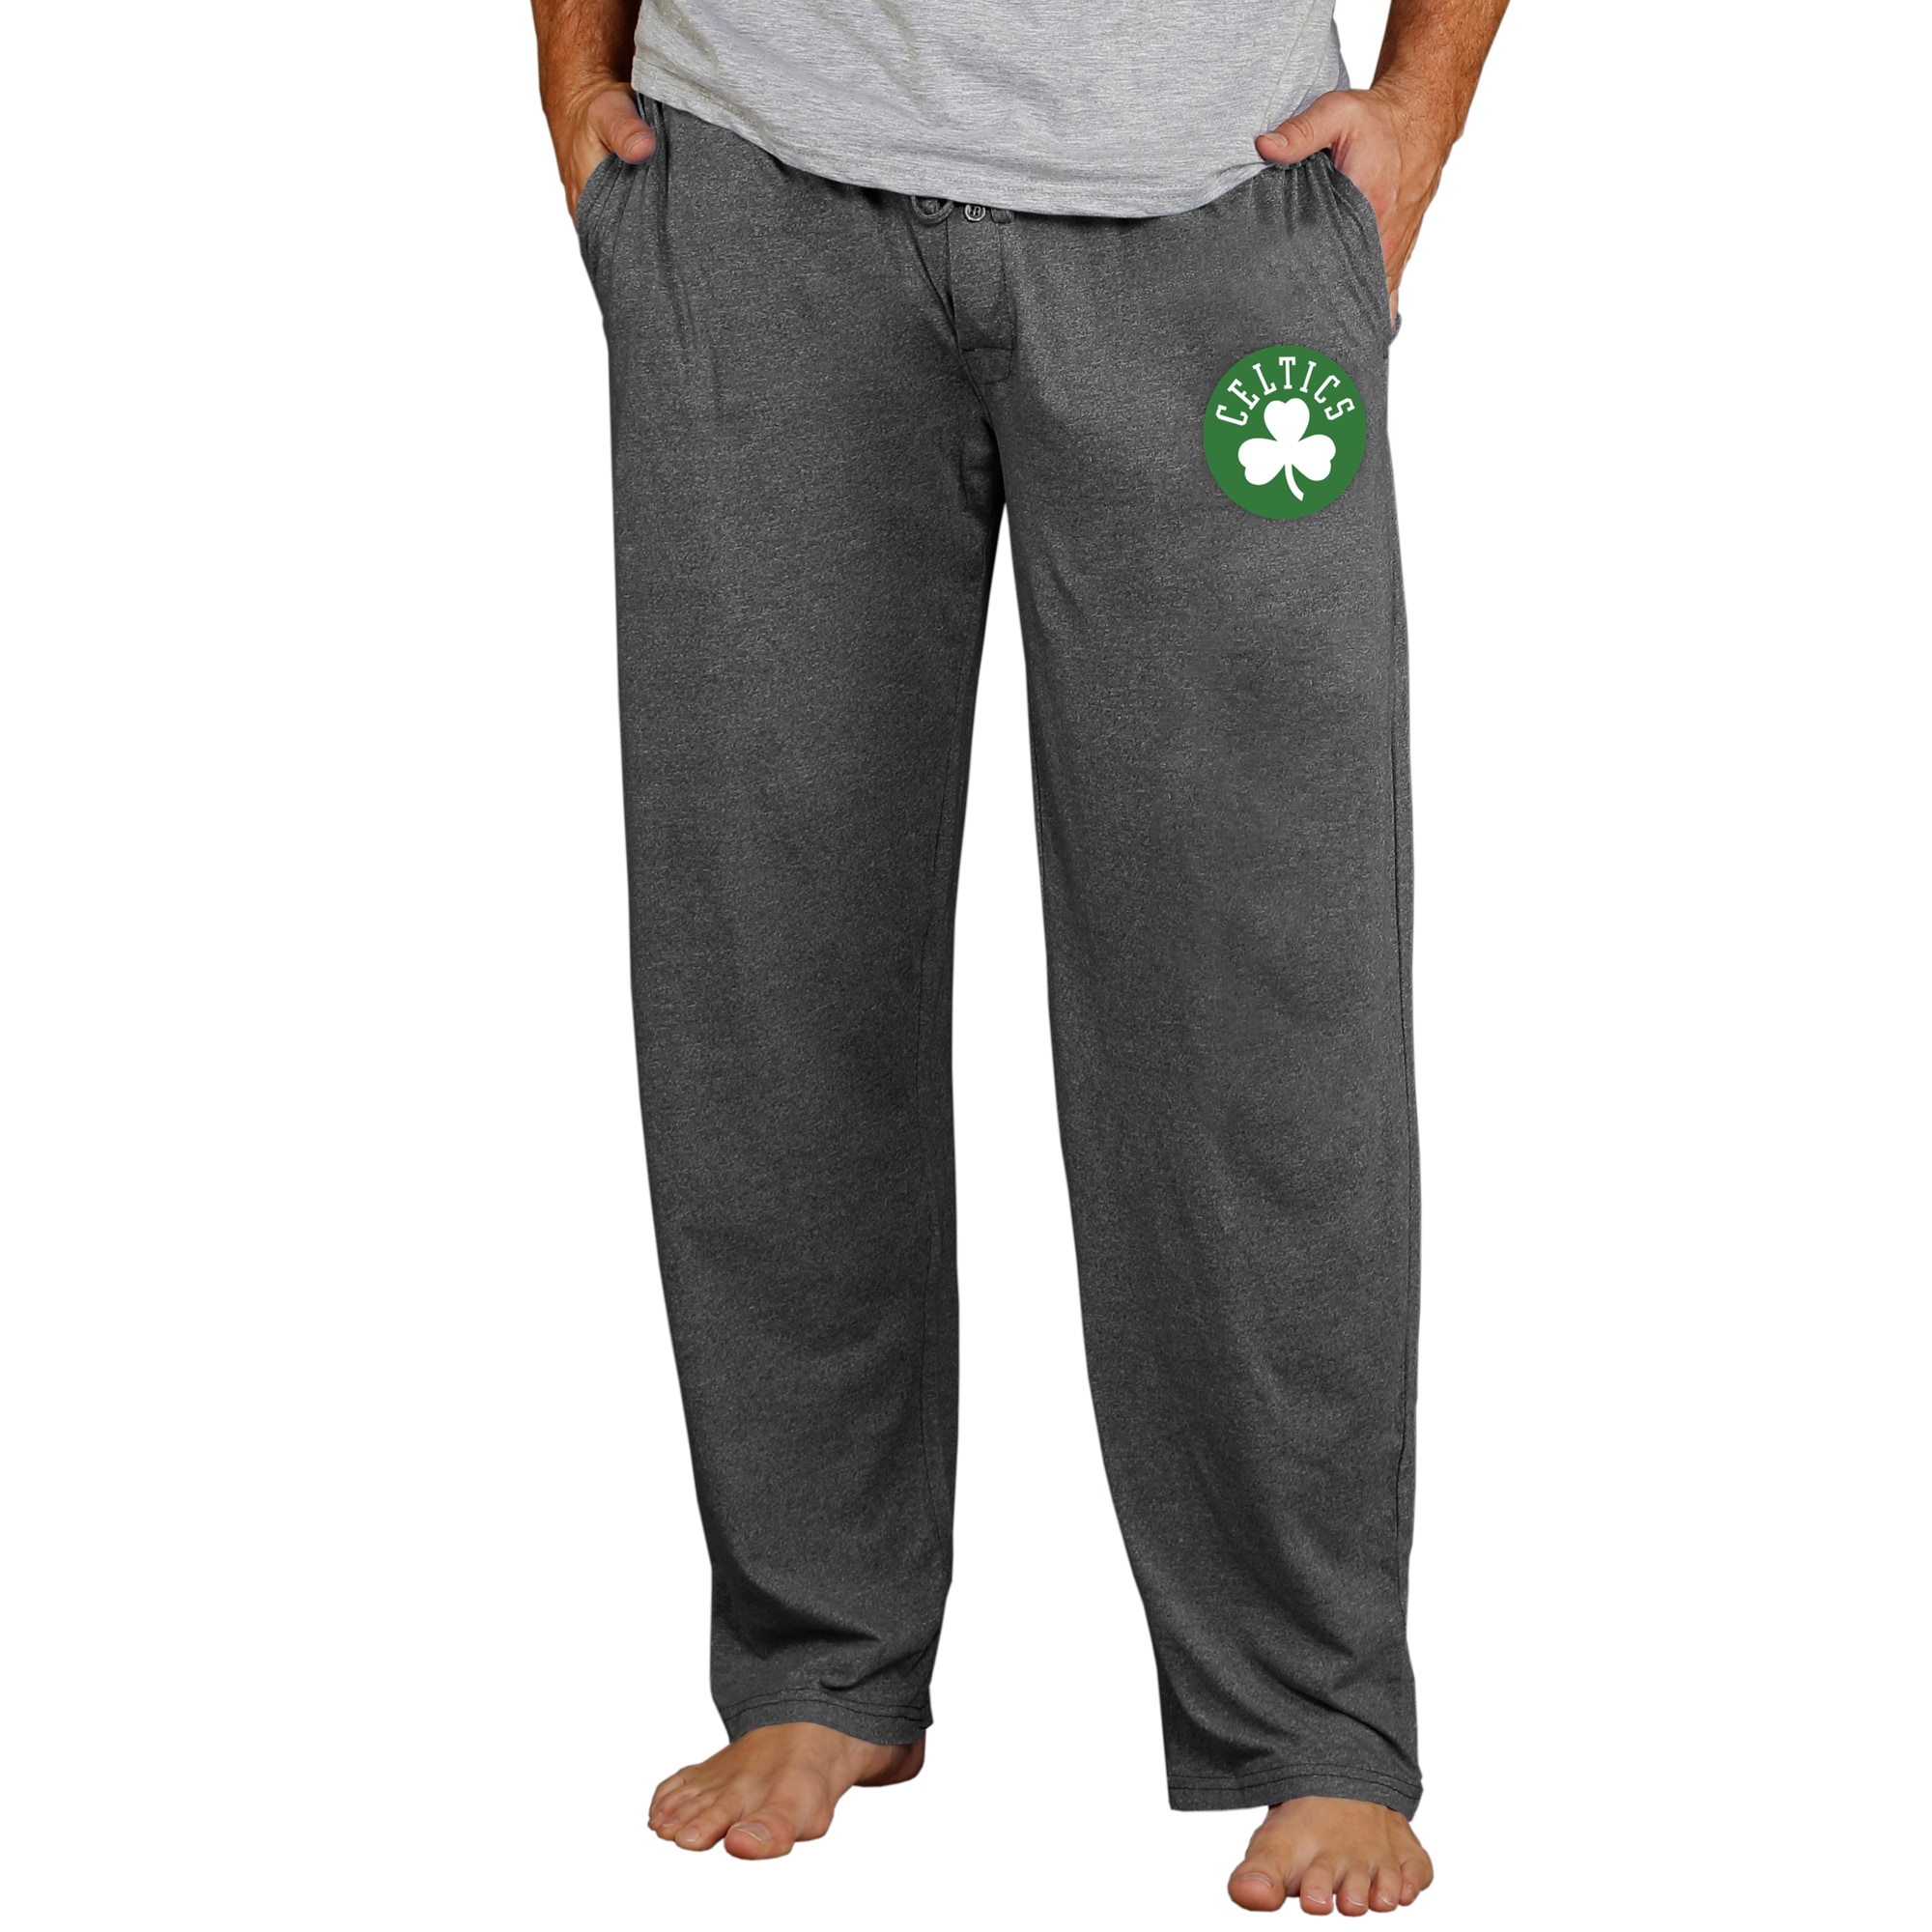 Men's Concepts Sport Charcoal Boston Celtics Quest Knit Lounge Pants - image 1 of 1